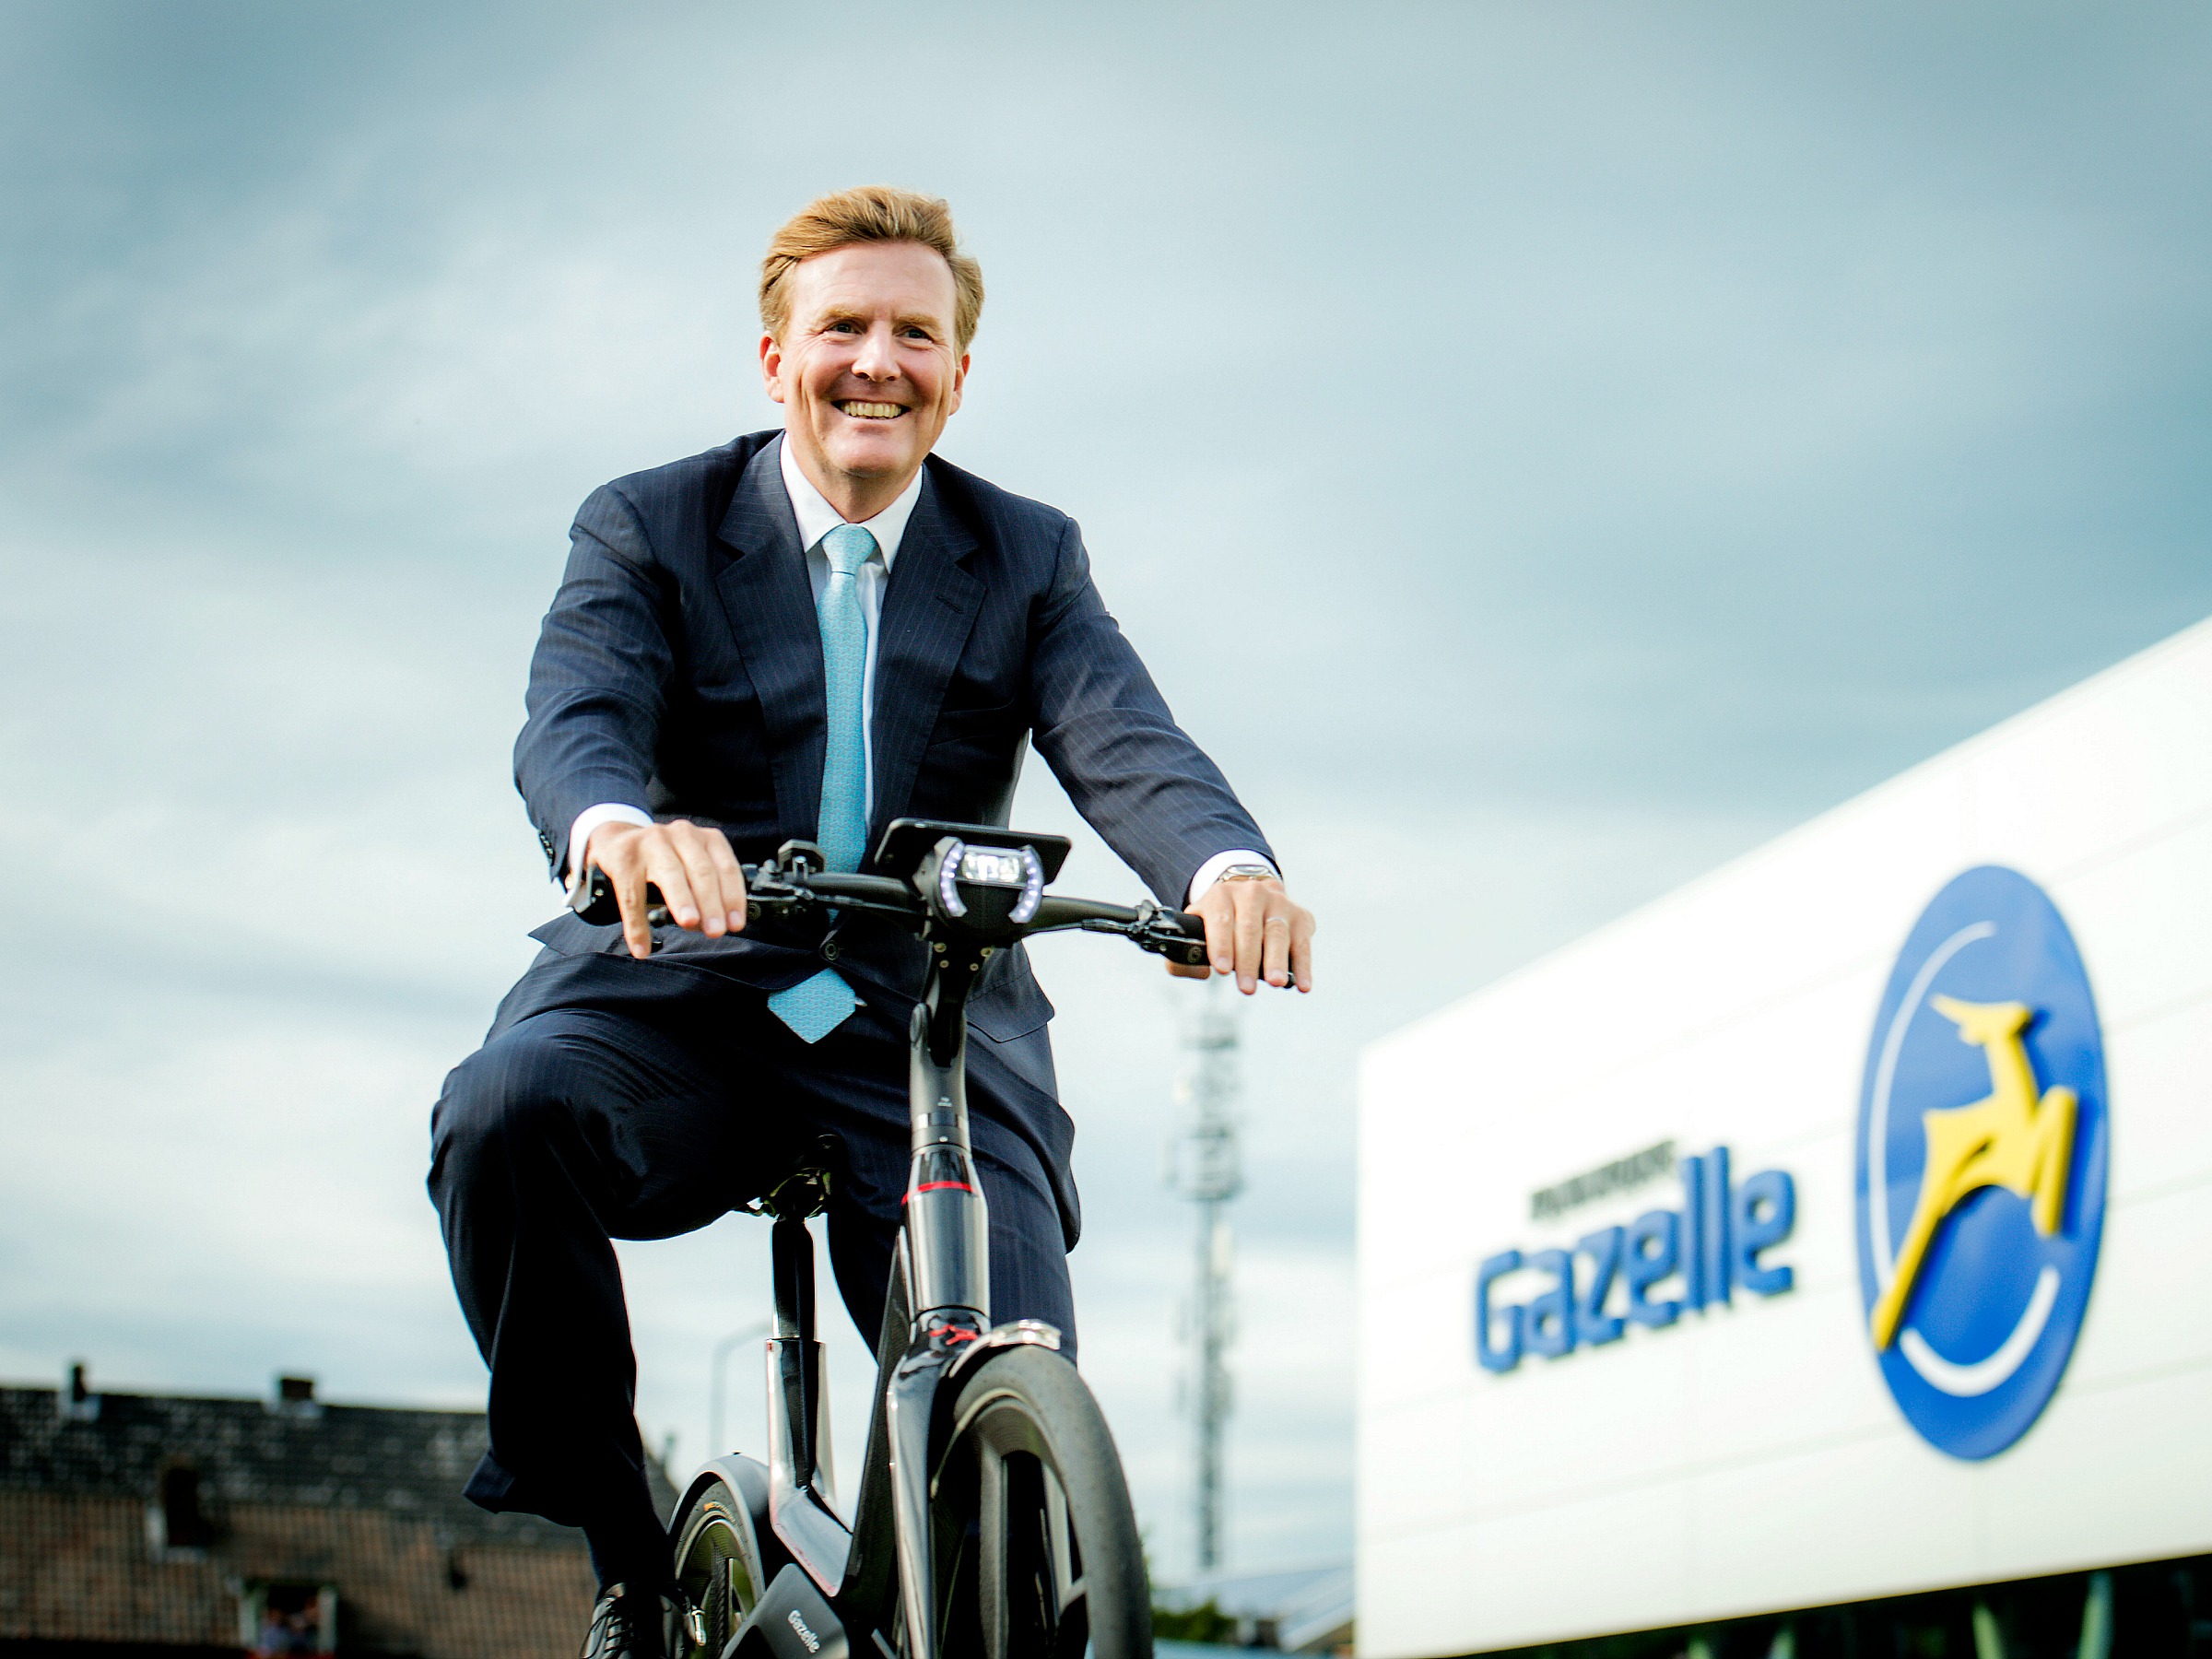 Koning Willem-Alexander fietst tijdens de opening van de nieuwe fabriek van Gazelle in 2015 een rondje op een e-bike.